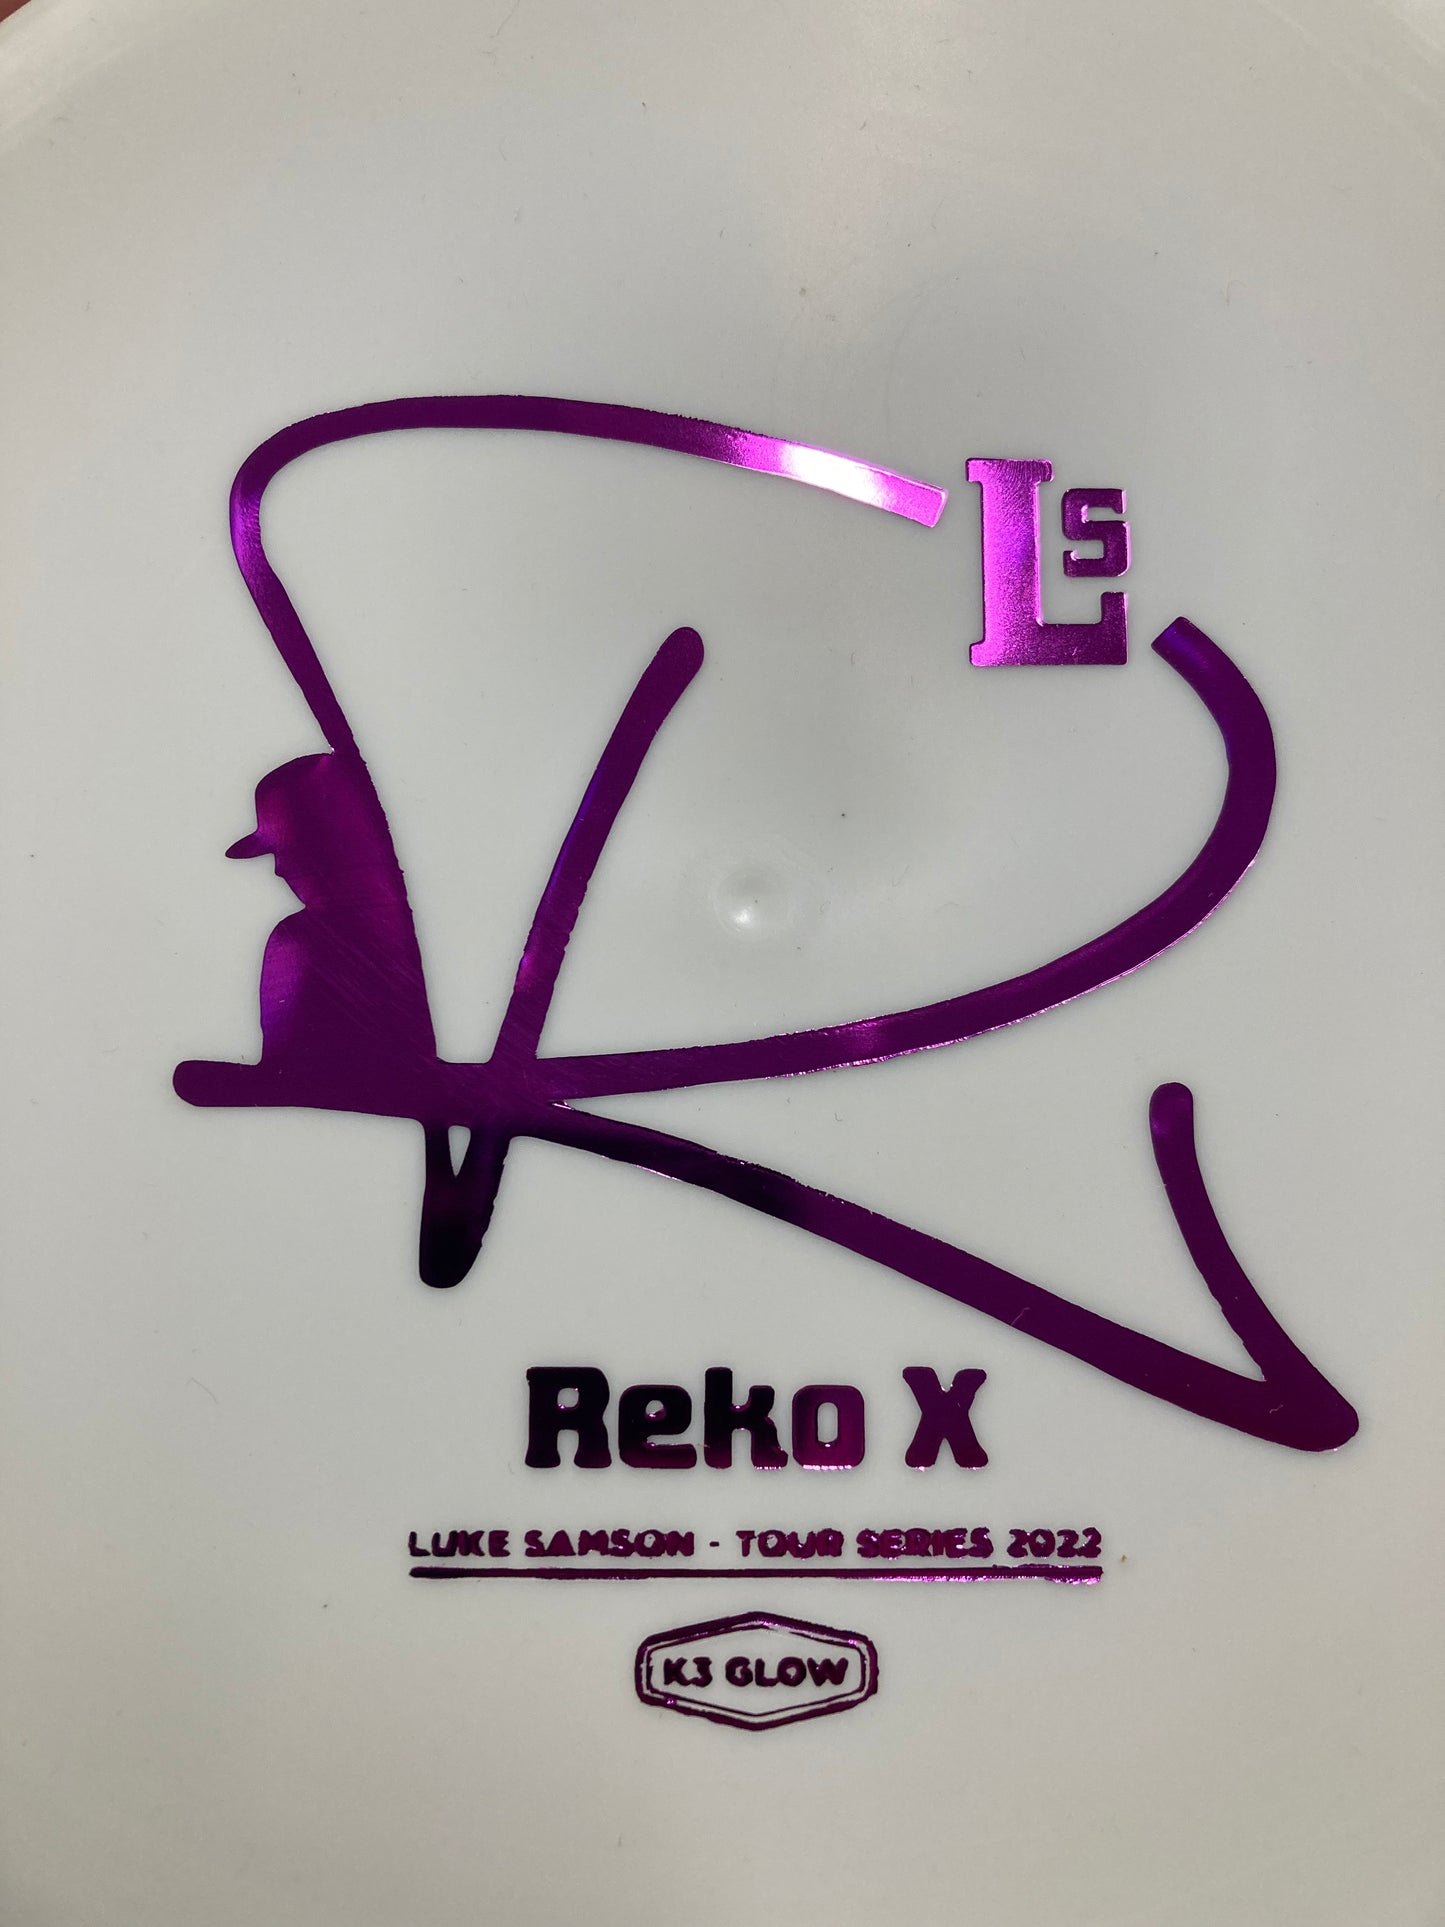 Kastaplast K3 Glow Reko-X